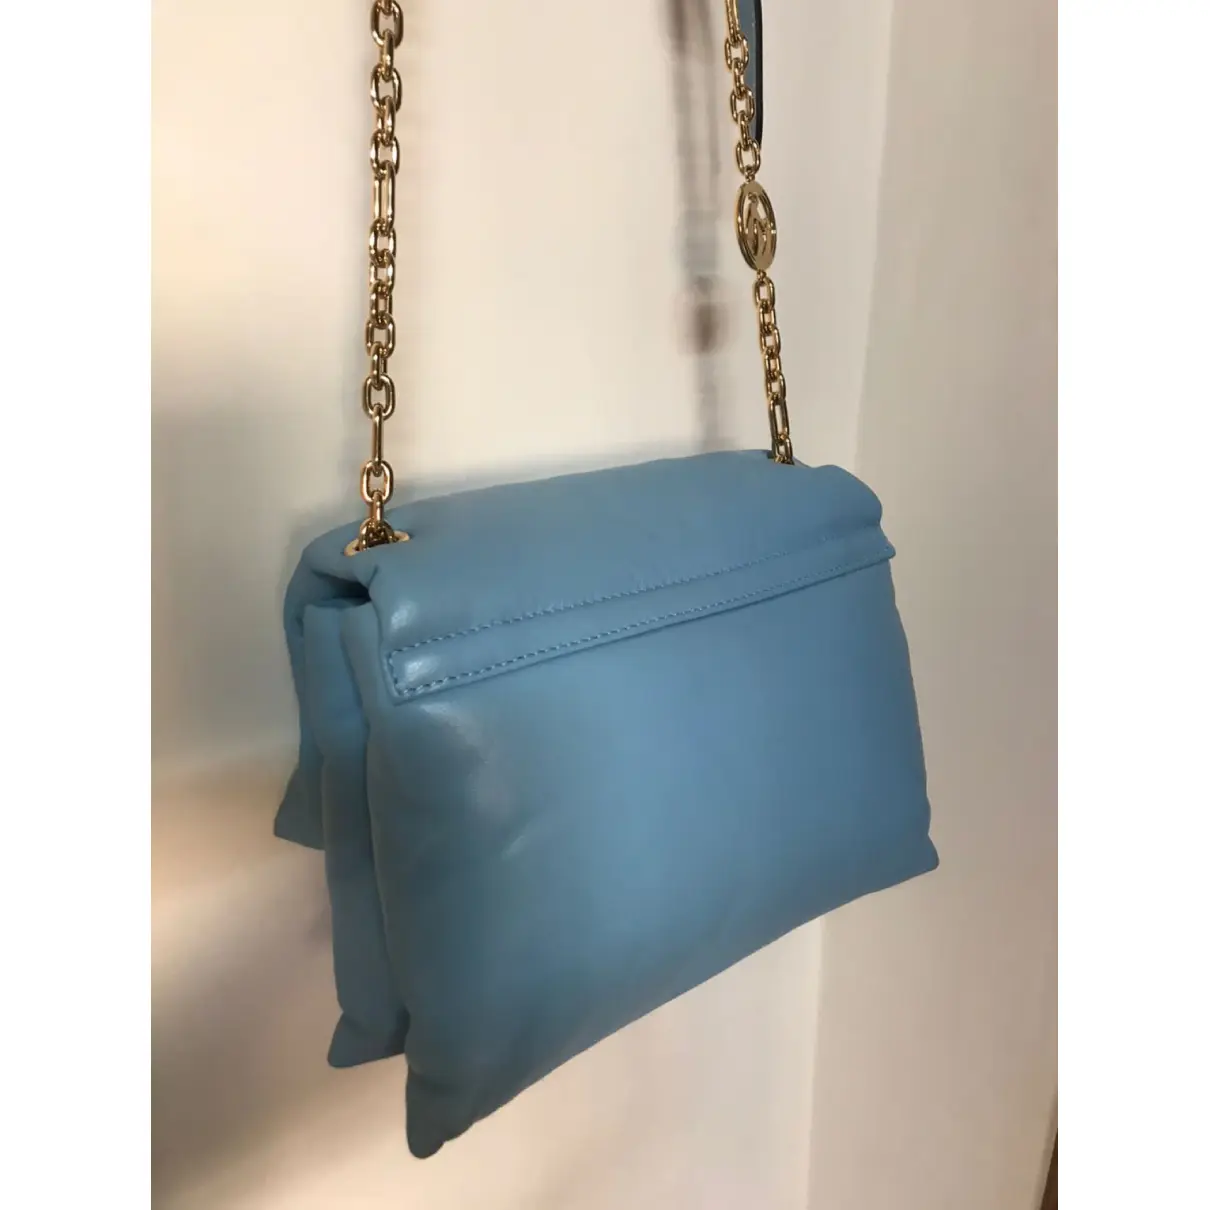 Buy Lanvin Sugar leather handbag online